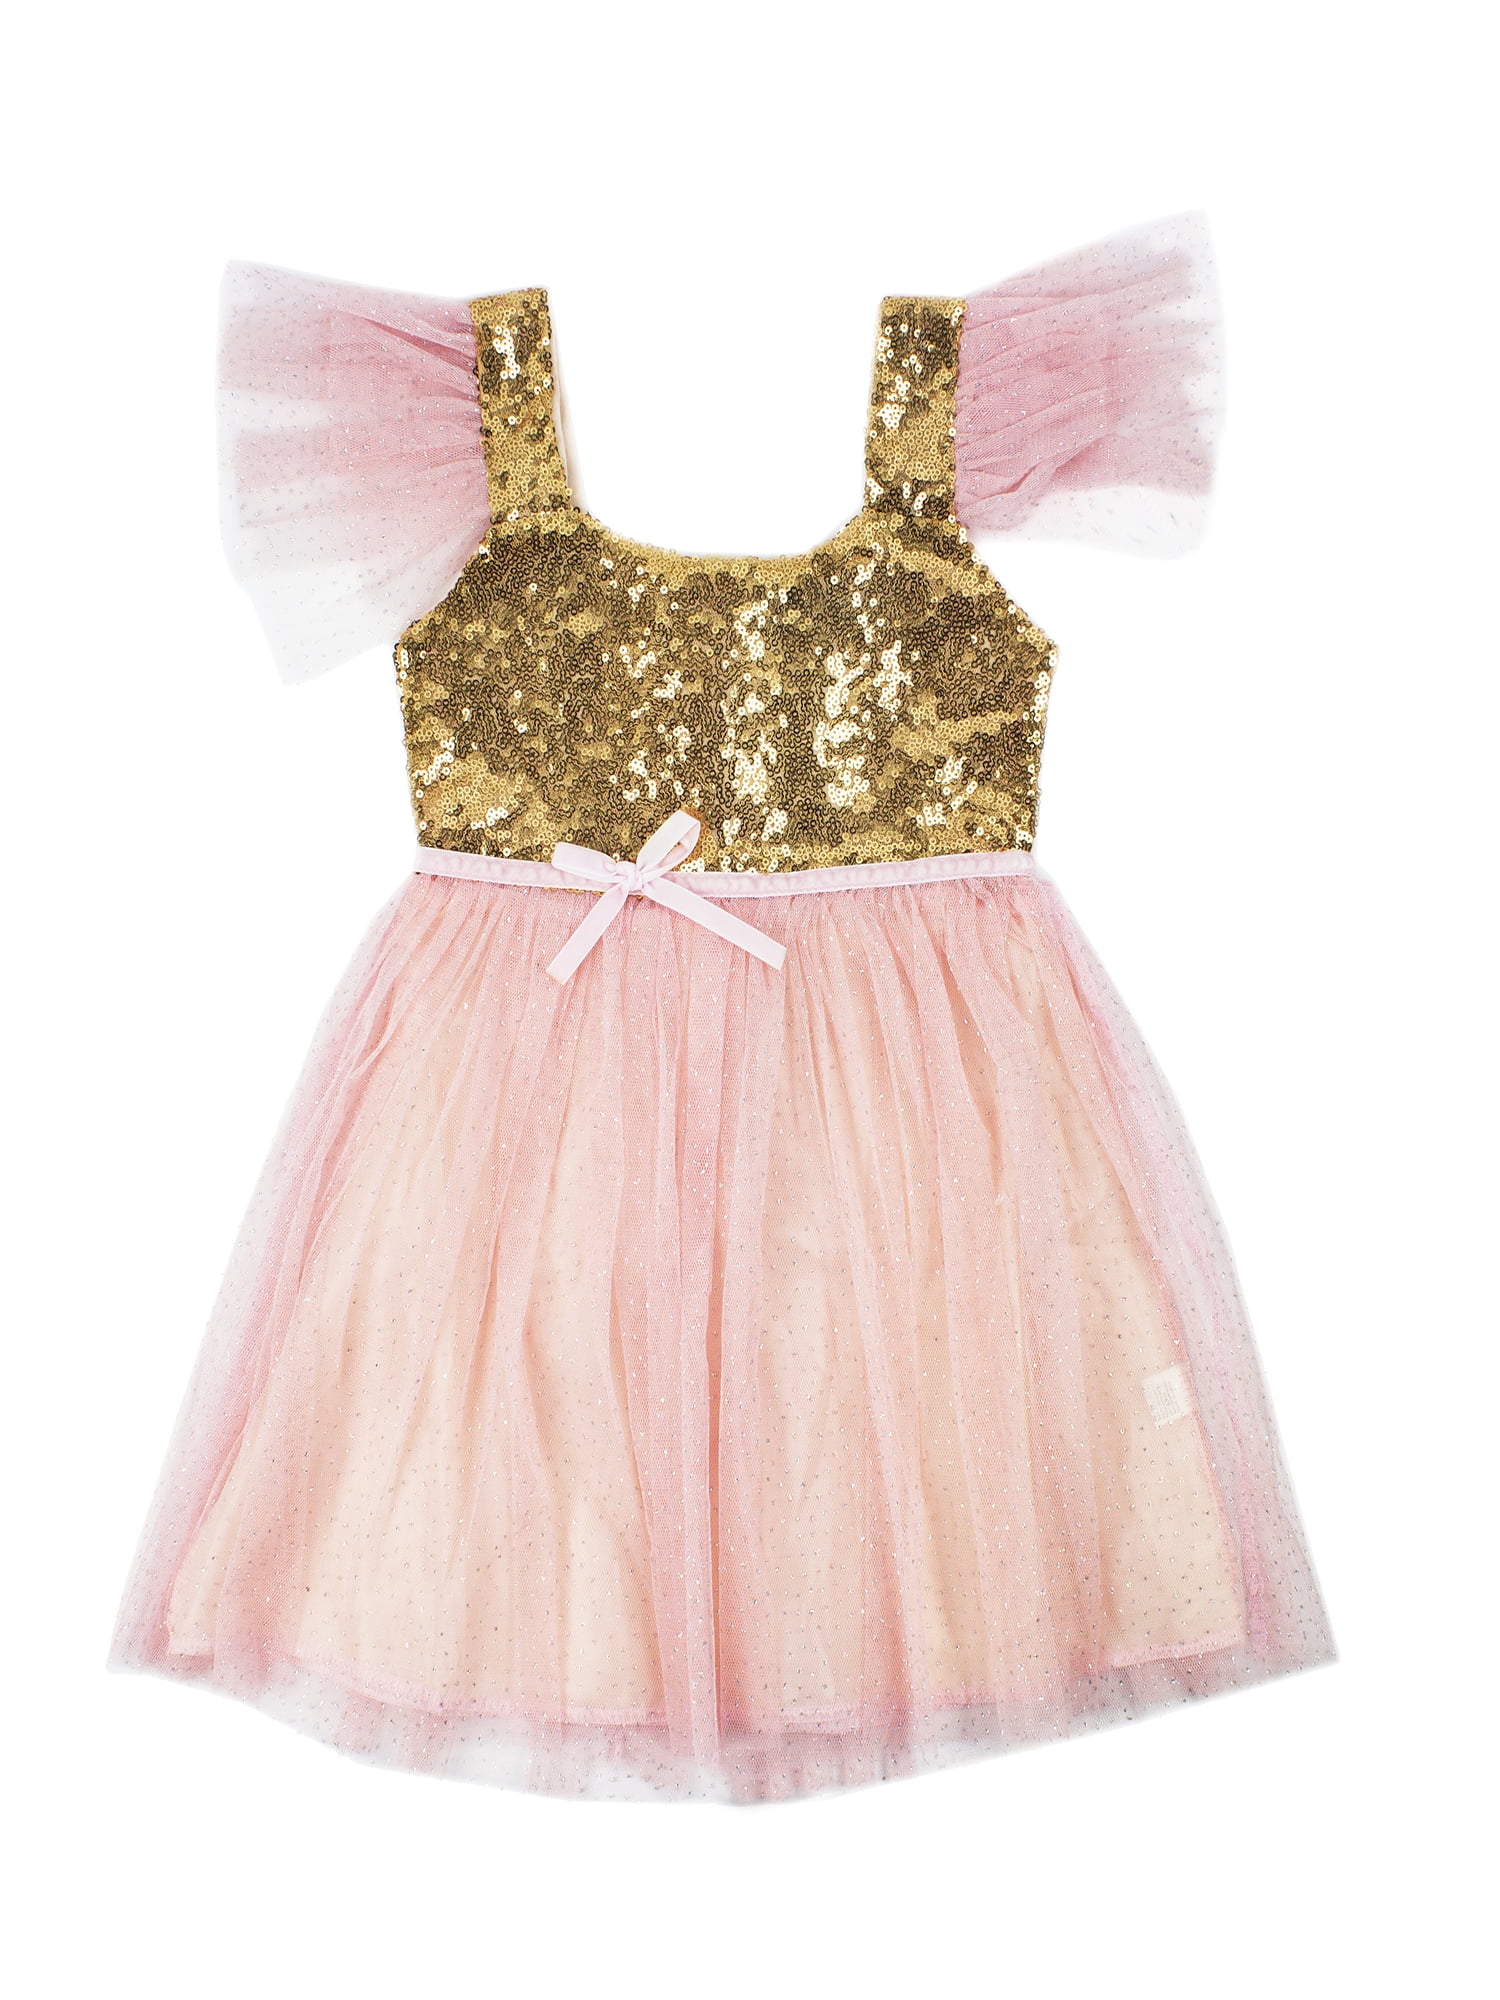 StylesILove - StylesILove Kids Gold Sequin Tulle Flower Girl Dress, 4 ...